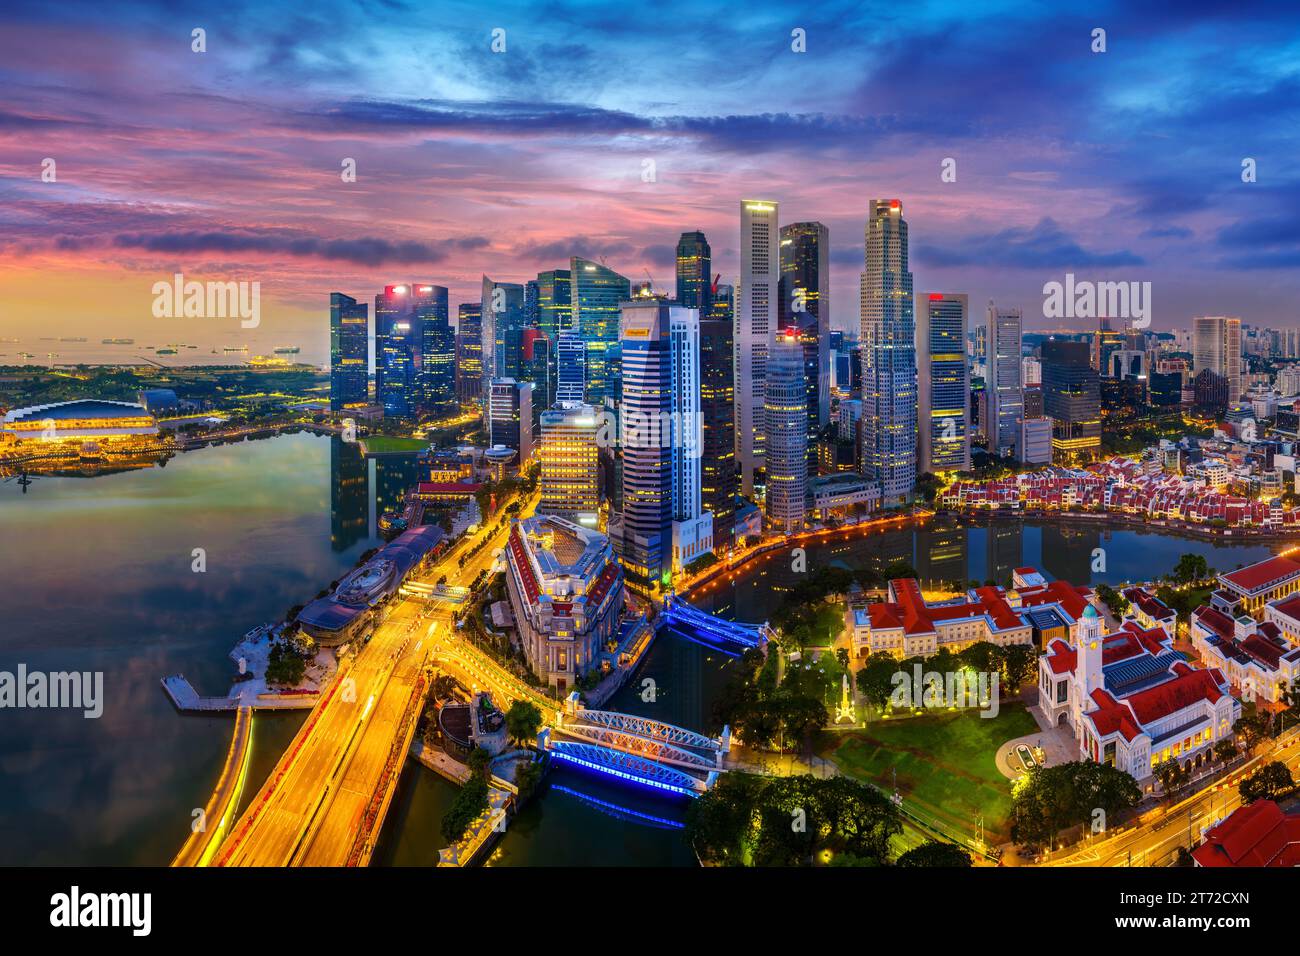 Vue aérienne de la ville de Singapour au crépuscule. Banque D'Images